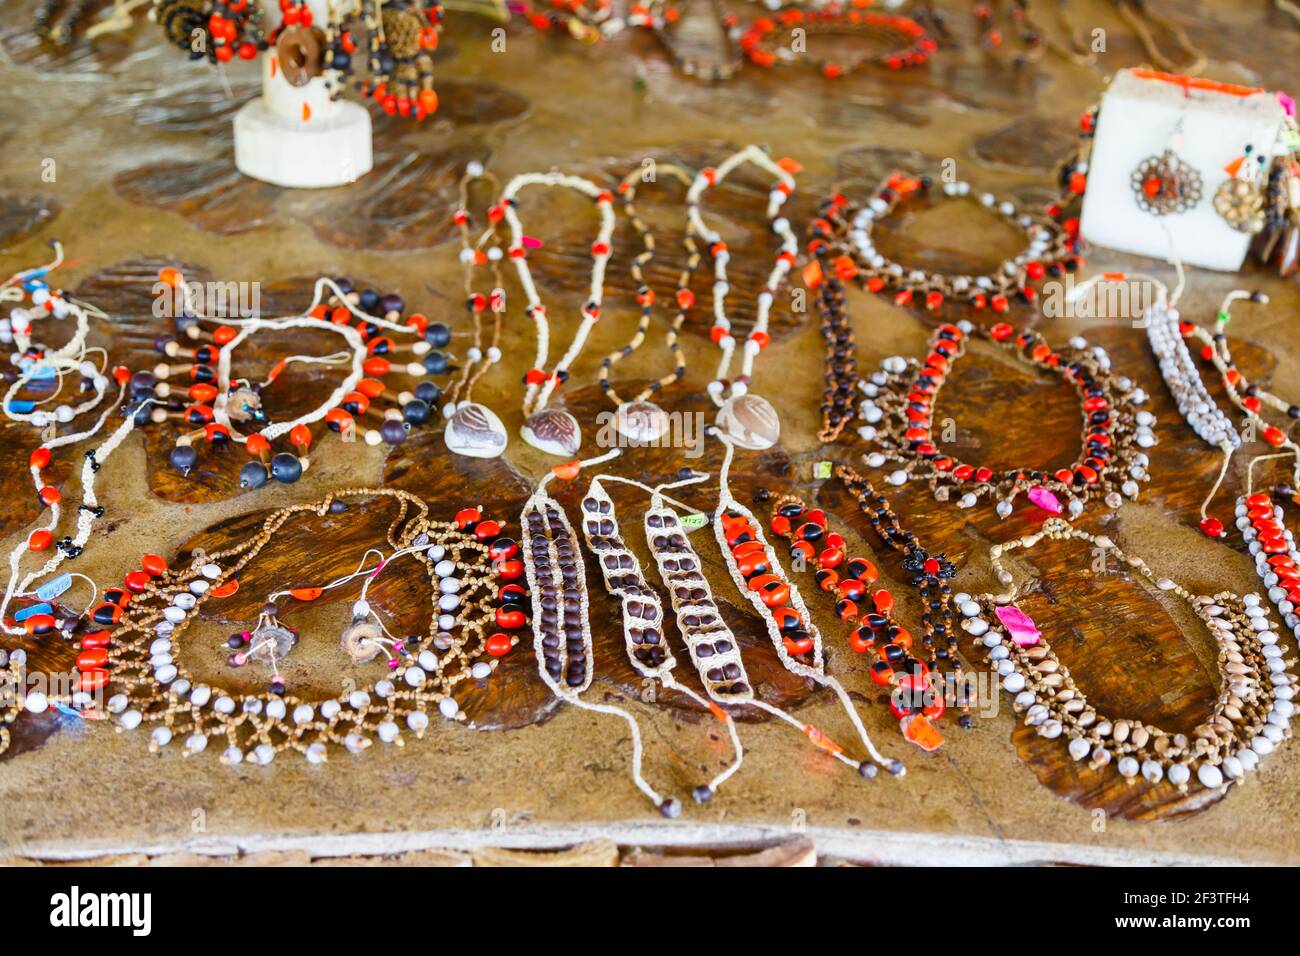 Handgemachte Souvenirs, die von Mitgliedern der Pilchi-Gemeinschaft am Napo-Fluss (einem Zufluss des Amazonas), Ecuador, Südamerika, zum Verkauf angeboten werden Stockfoto